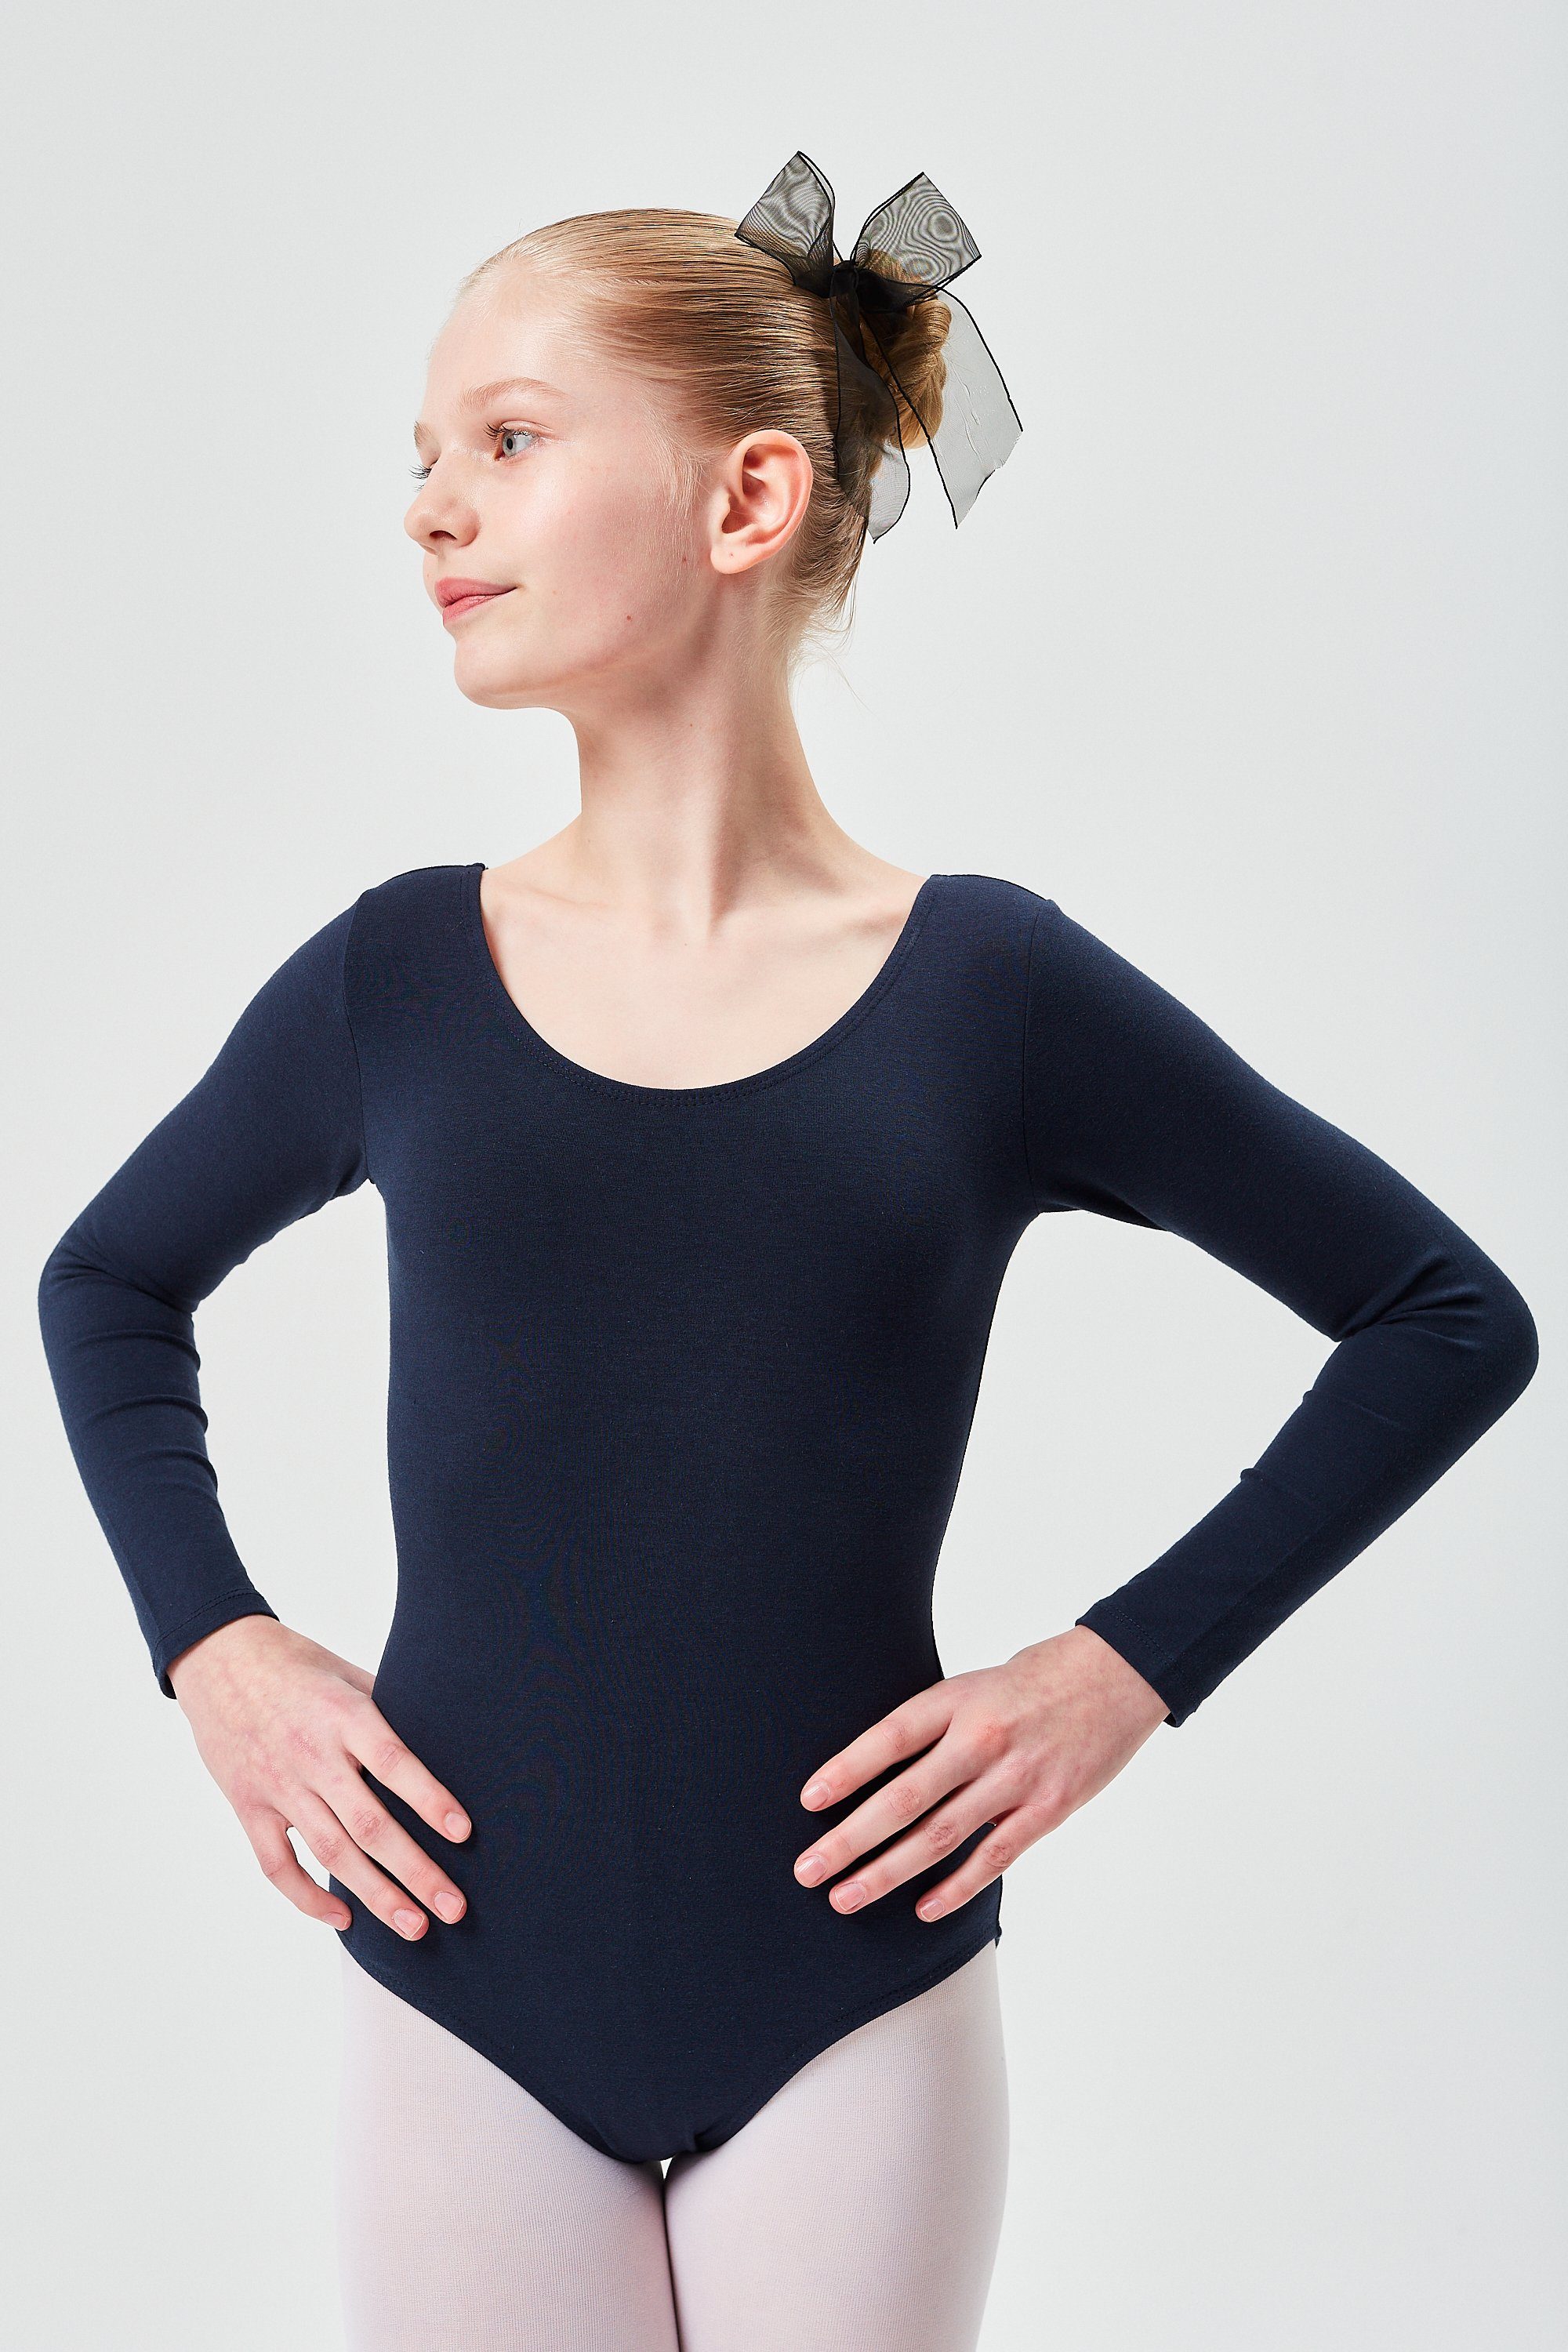 tanzmuster Body Ballettbody Lilly aus weichem Baumwollmischgewebe Langarm Trikot fürs Kinder Ballett marineblau